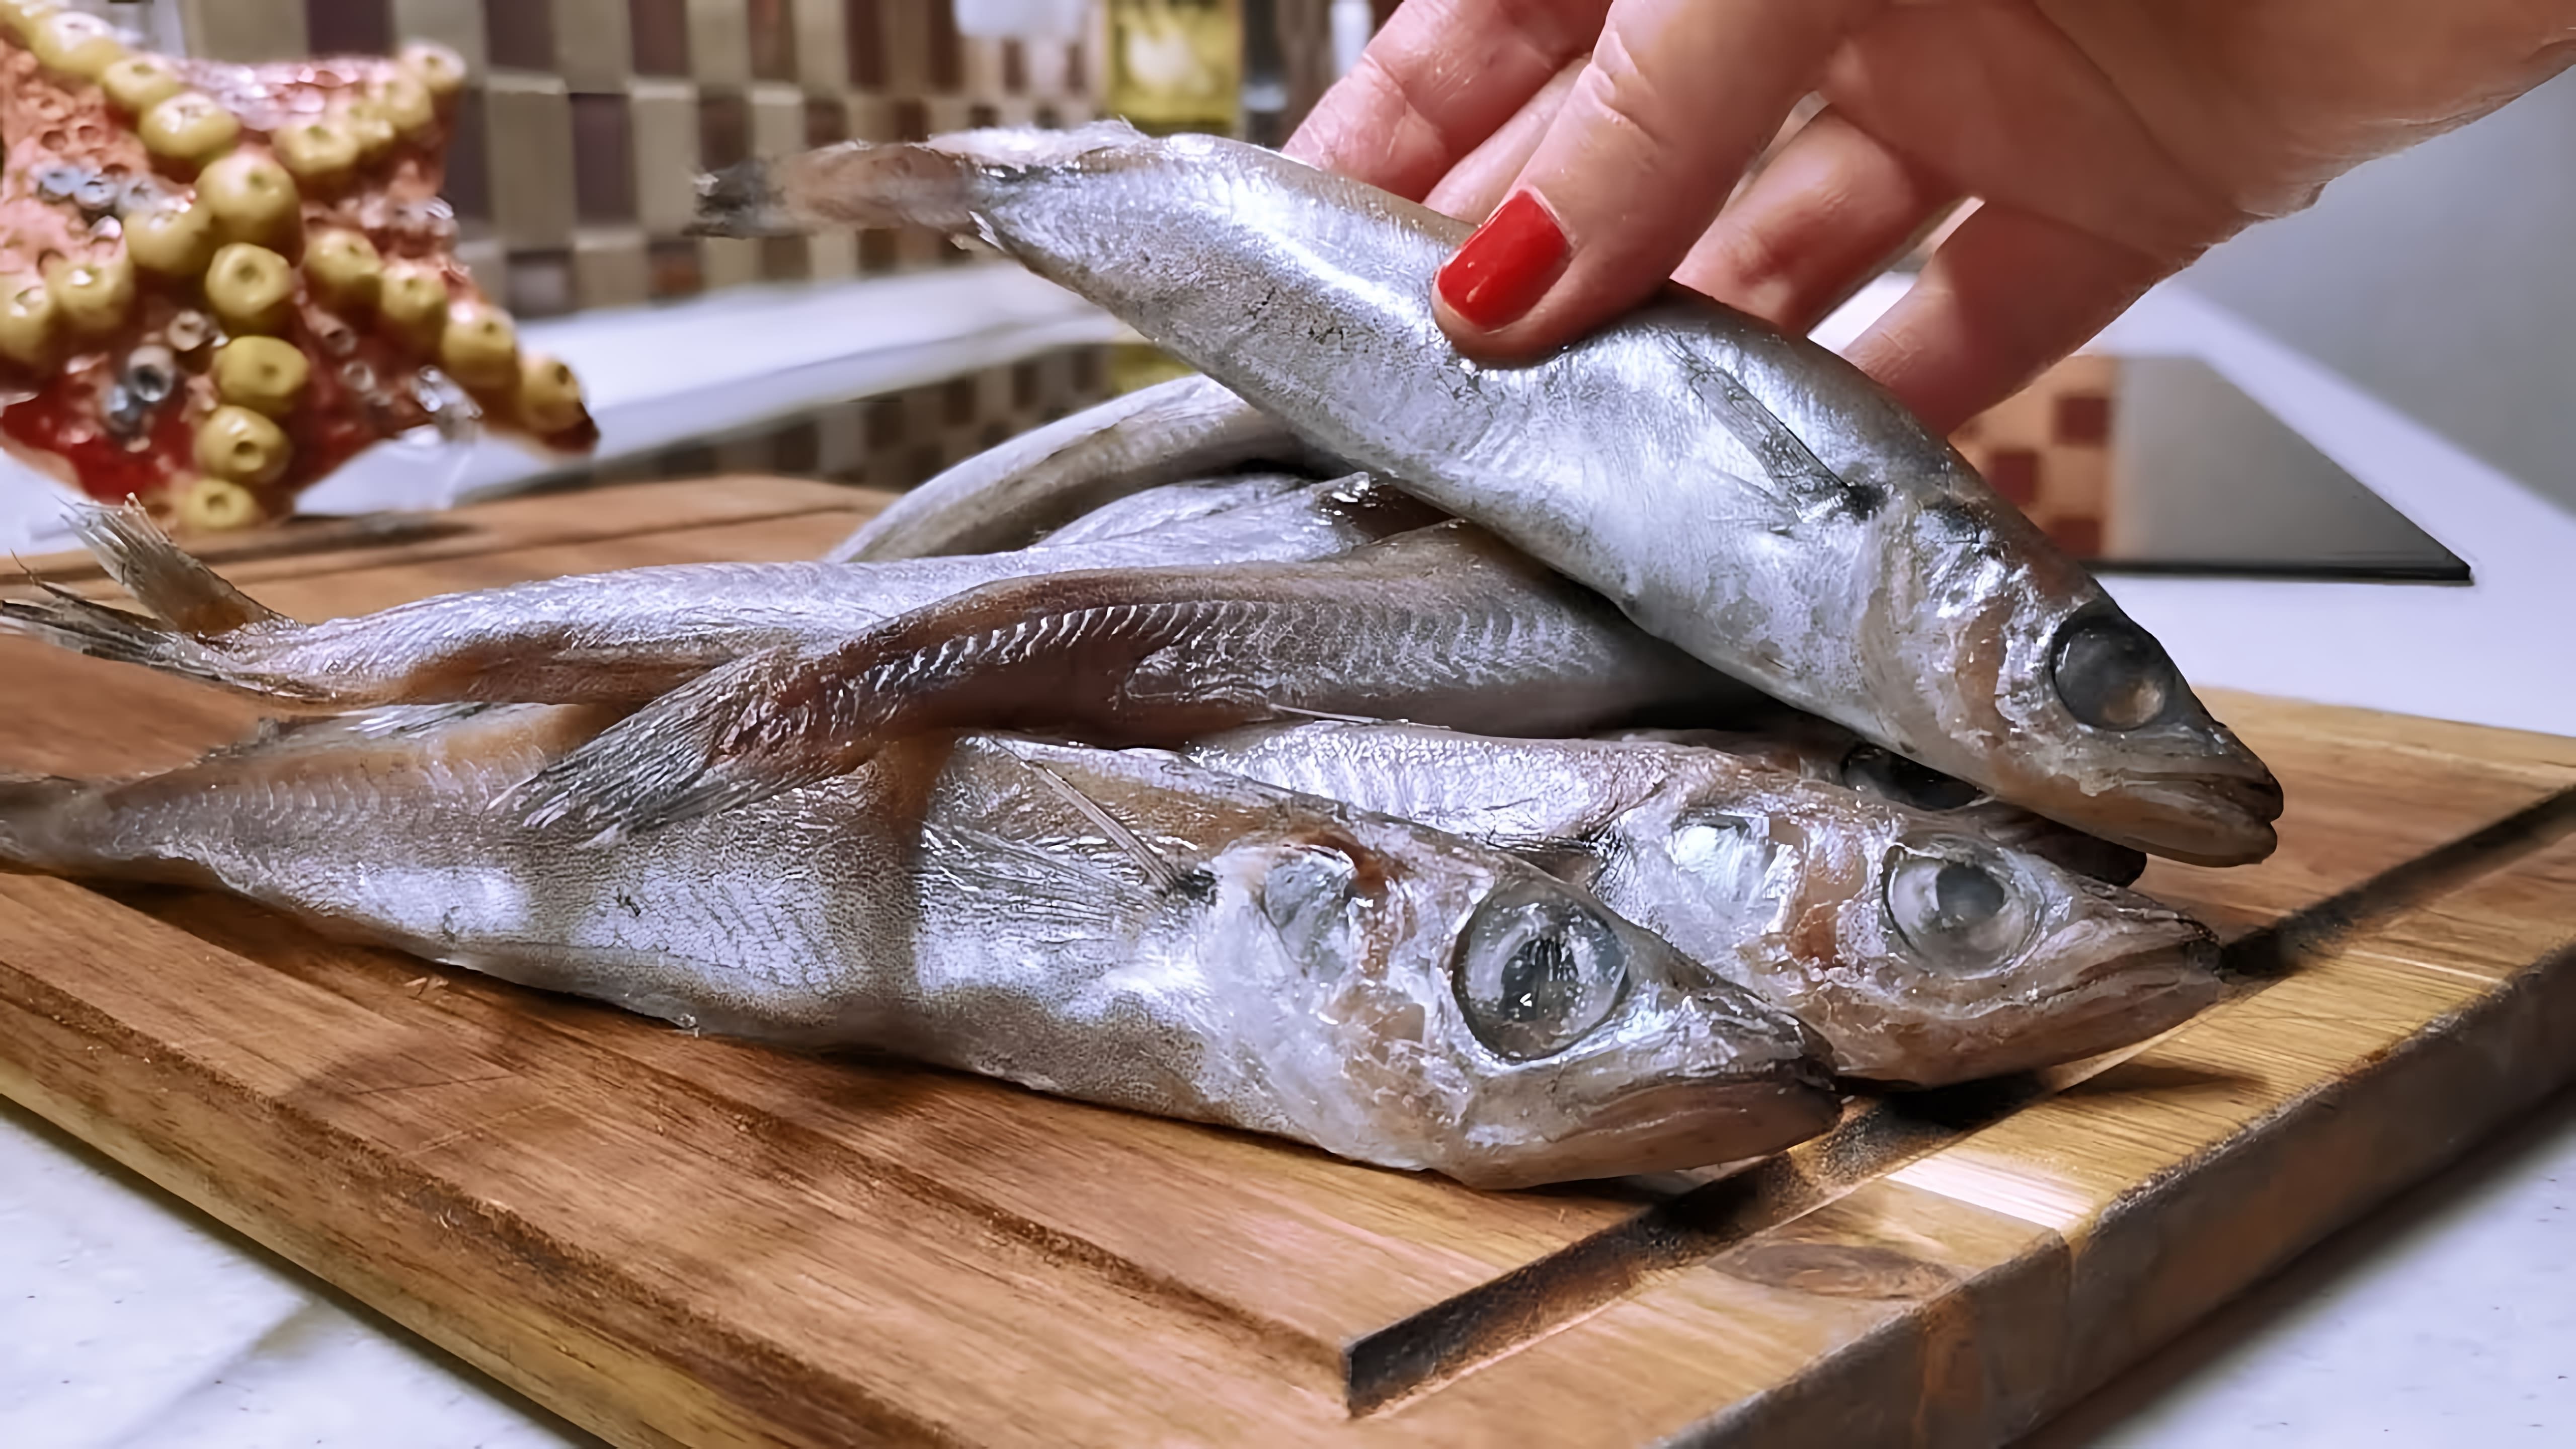 В этом видео-ролике мы увидим, как из самой недорогой рыбы Путассу получается изумительное блюдо под картошку